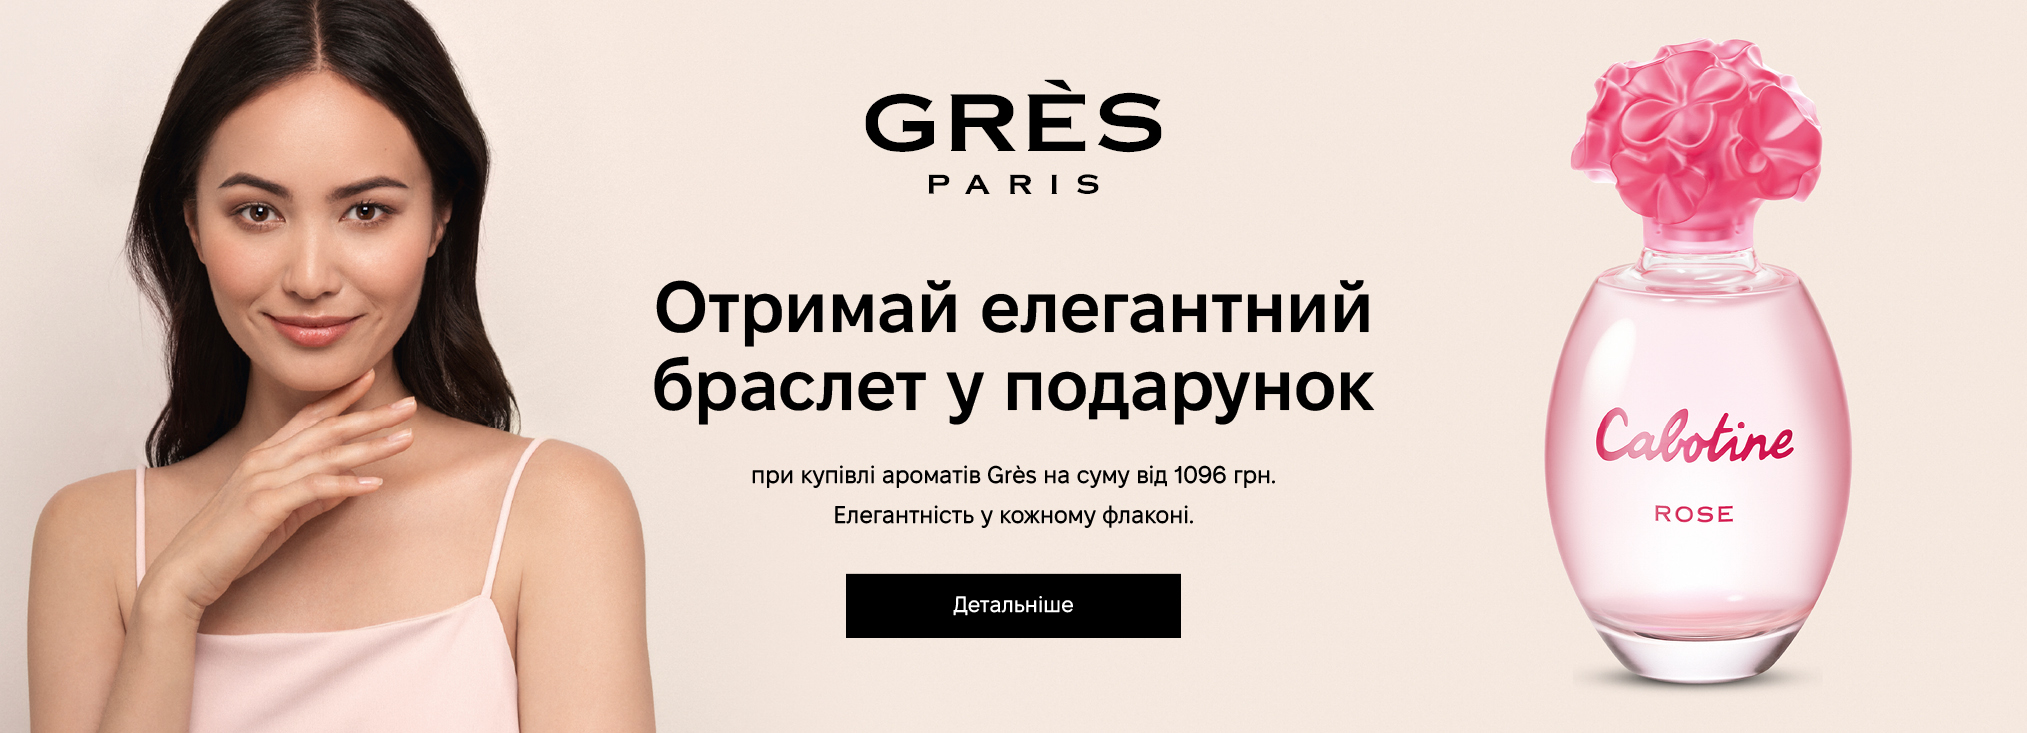 Gres_3